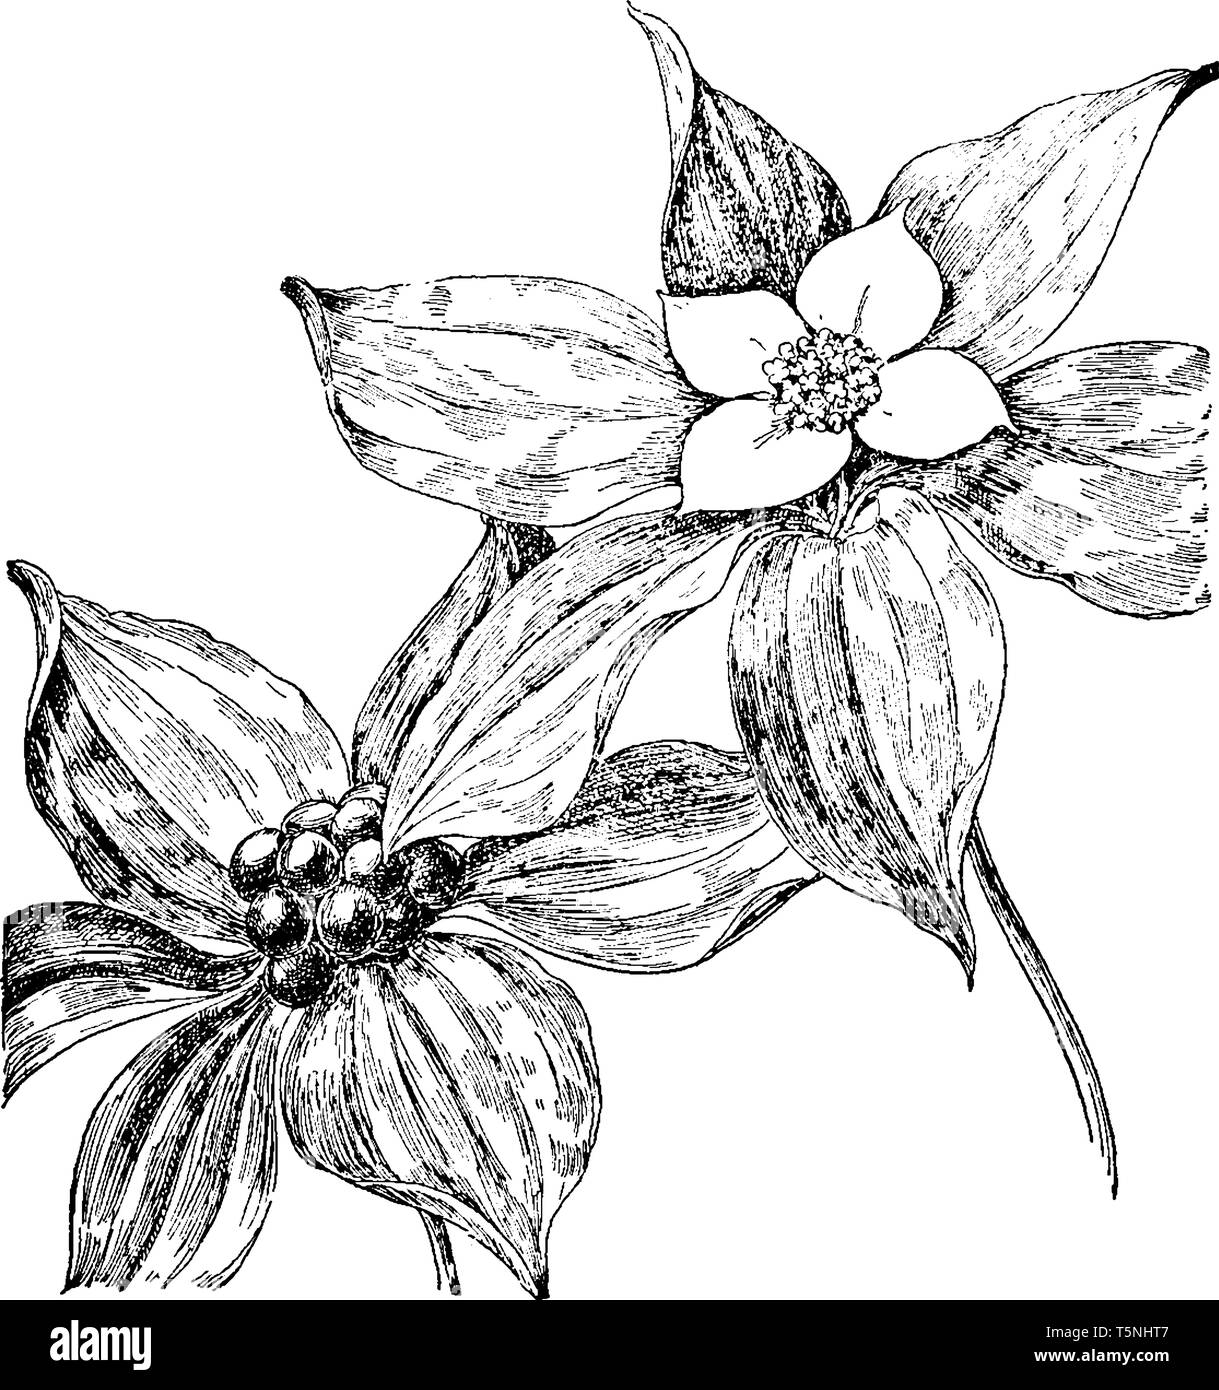 Una foto mostra Dwarf Corniolo Bunchberry, comunemente noto come Cornus canadensis. Essa appartiene alla famiglia di corniolo, Cornaceae. Le sue foglie sono grandi e i Illustrazione Vettoriale